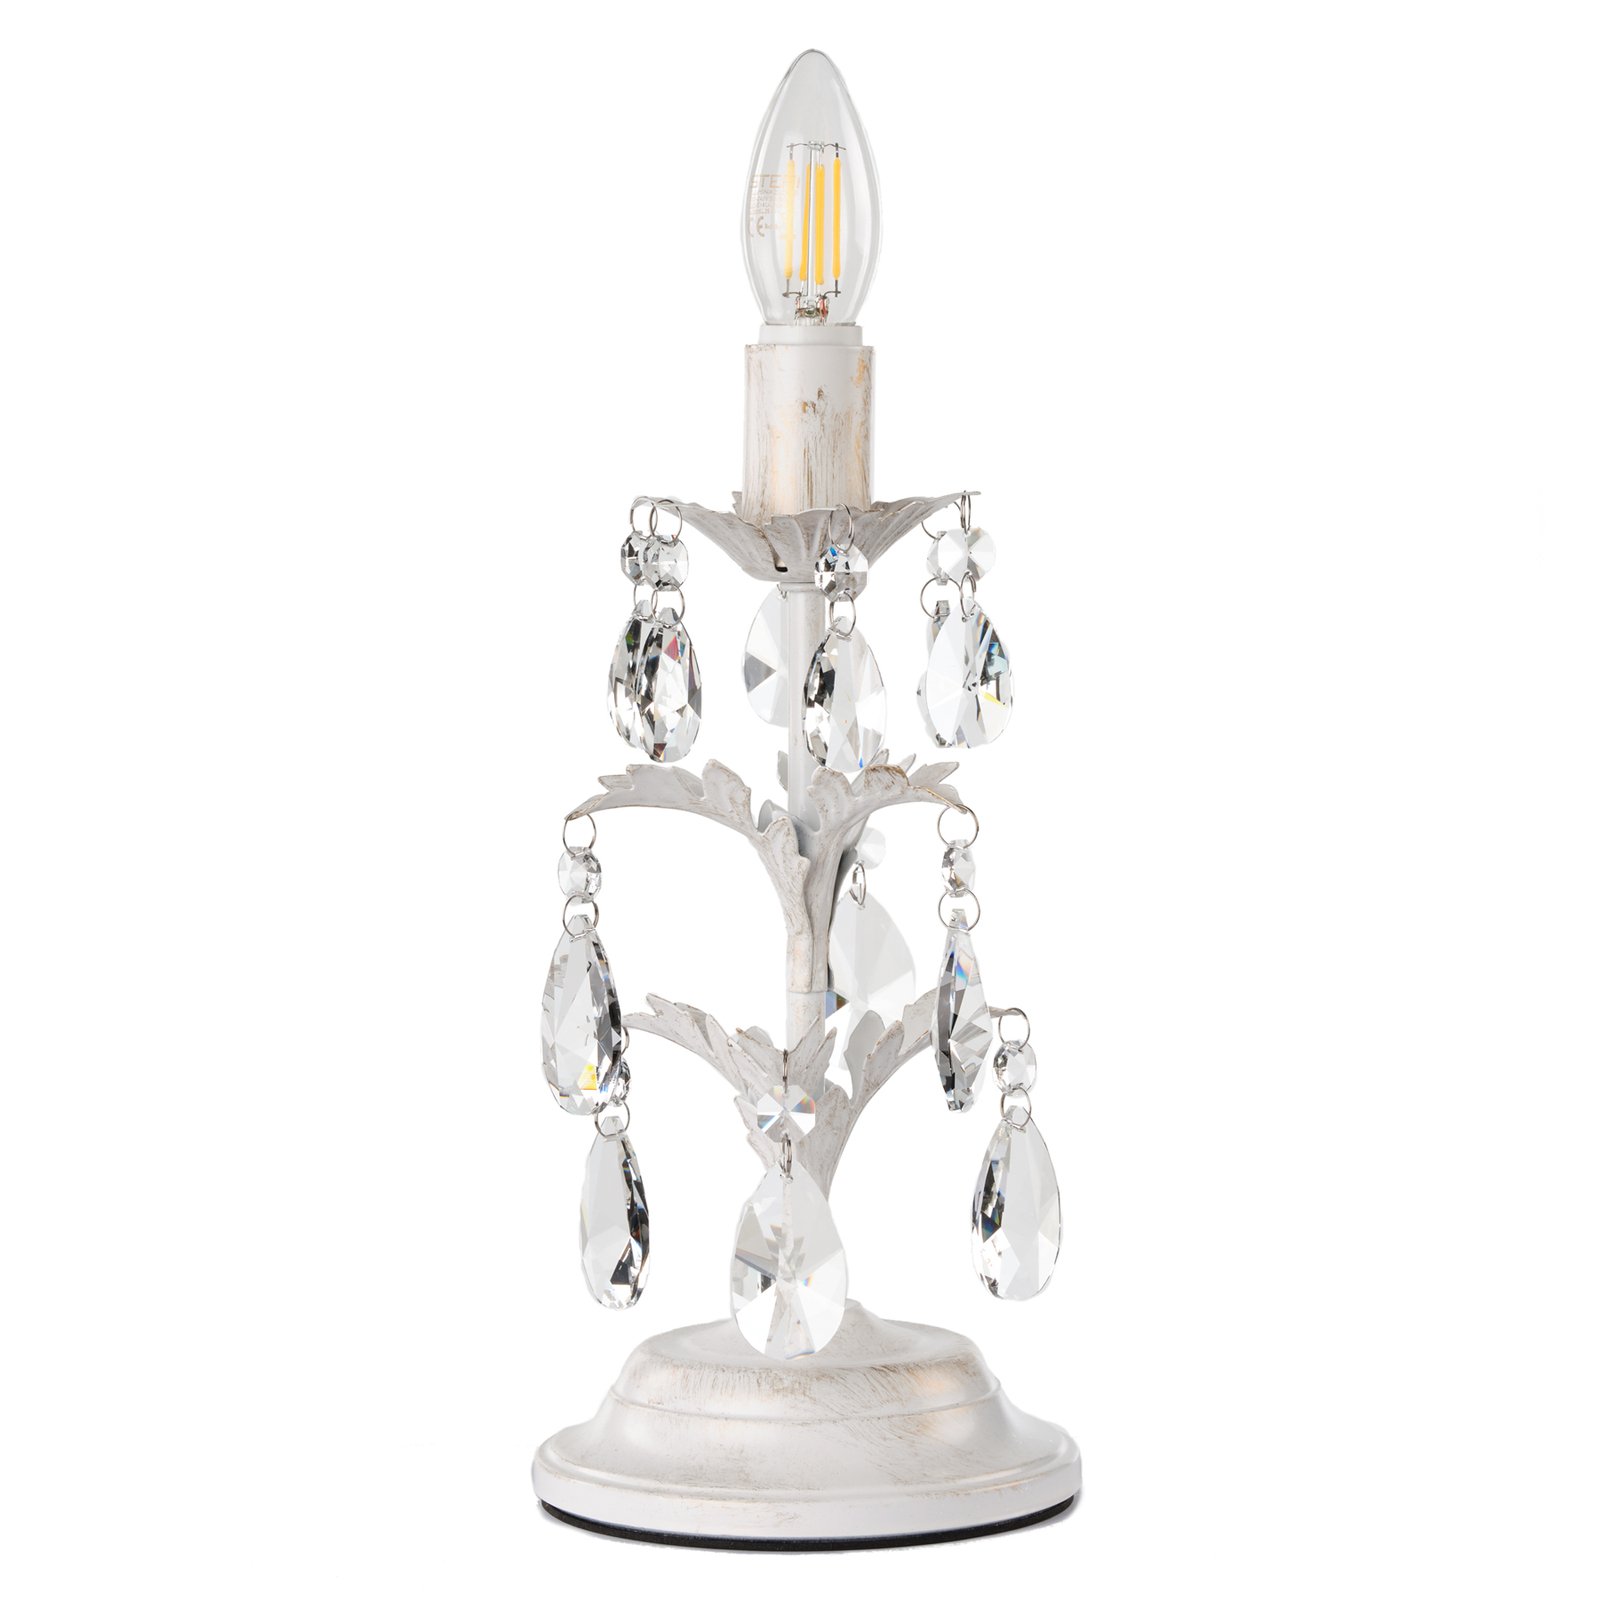 Teresa crystal table lamp, no lampshades, ivory